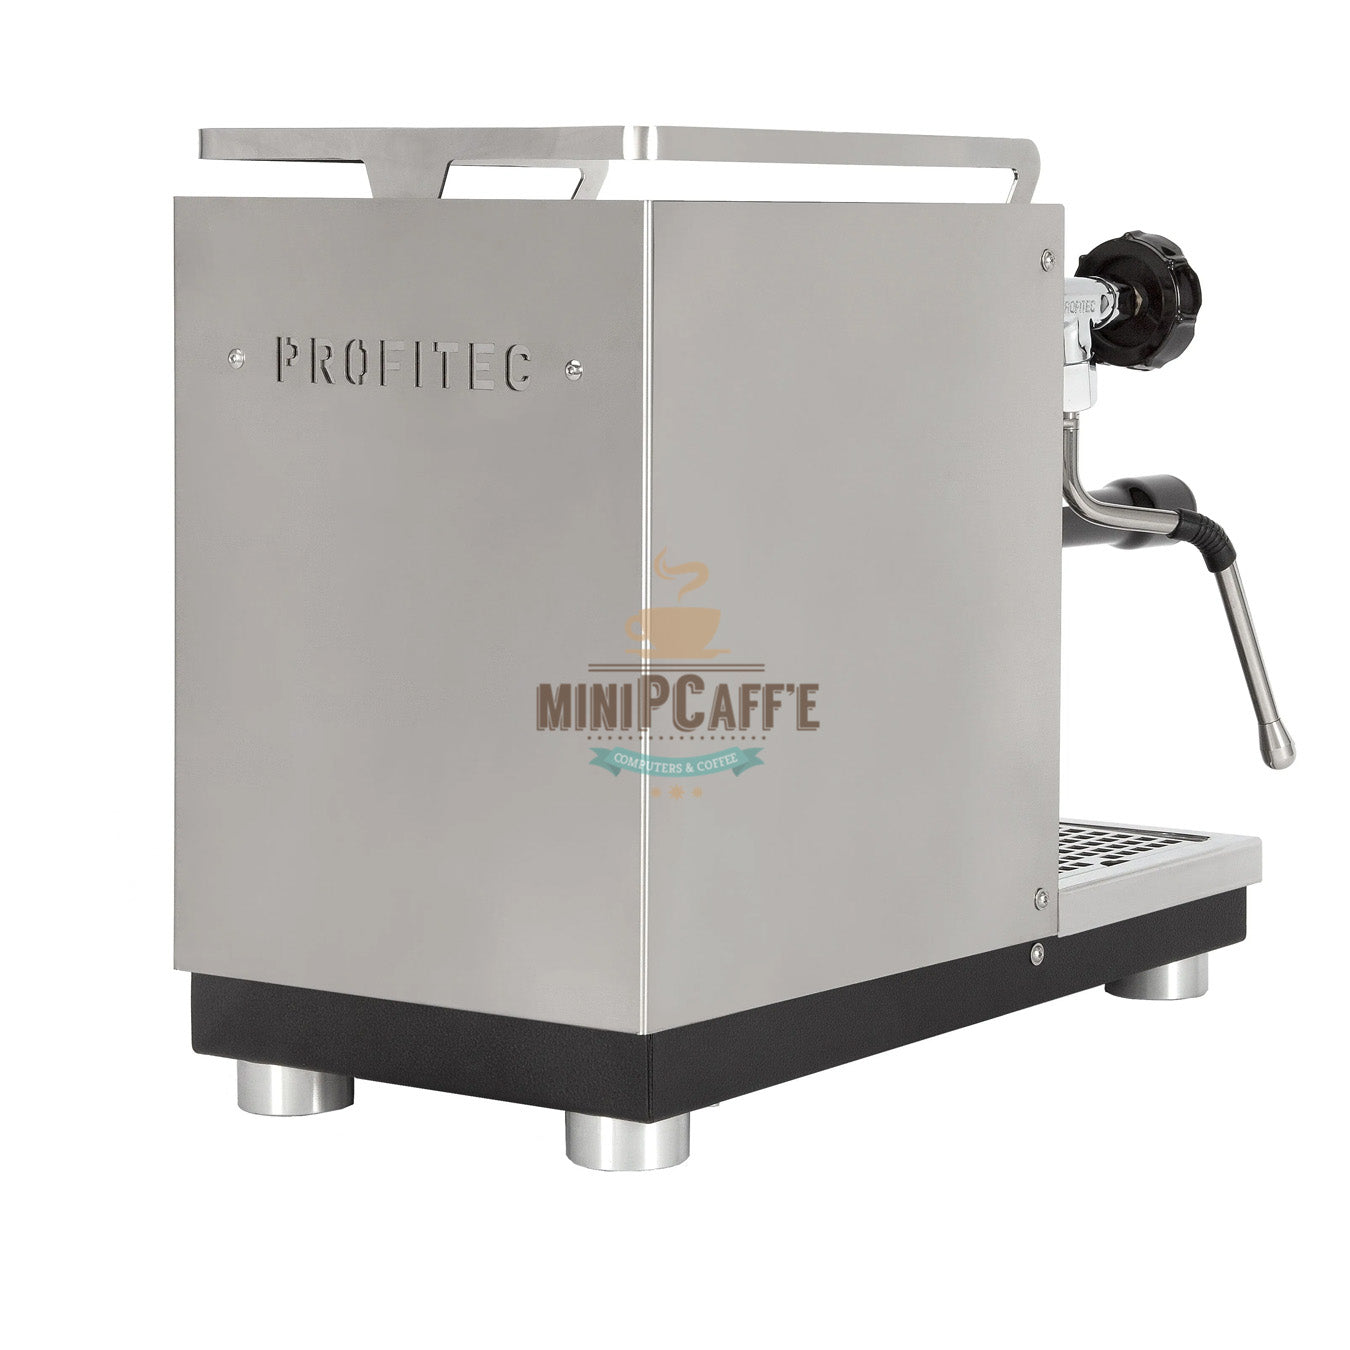 เครื่องชงกาแฟ Profitec Pro 400